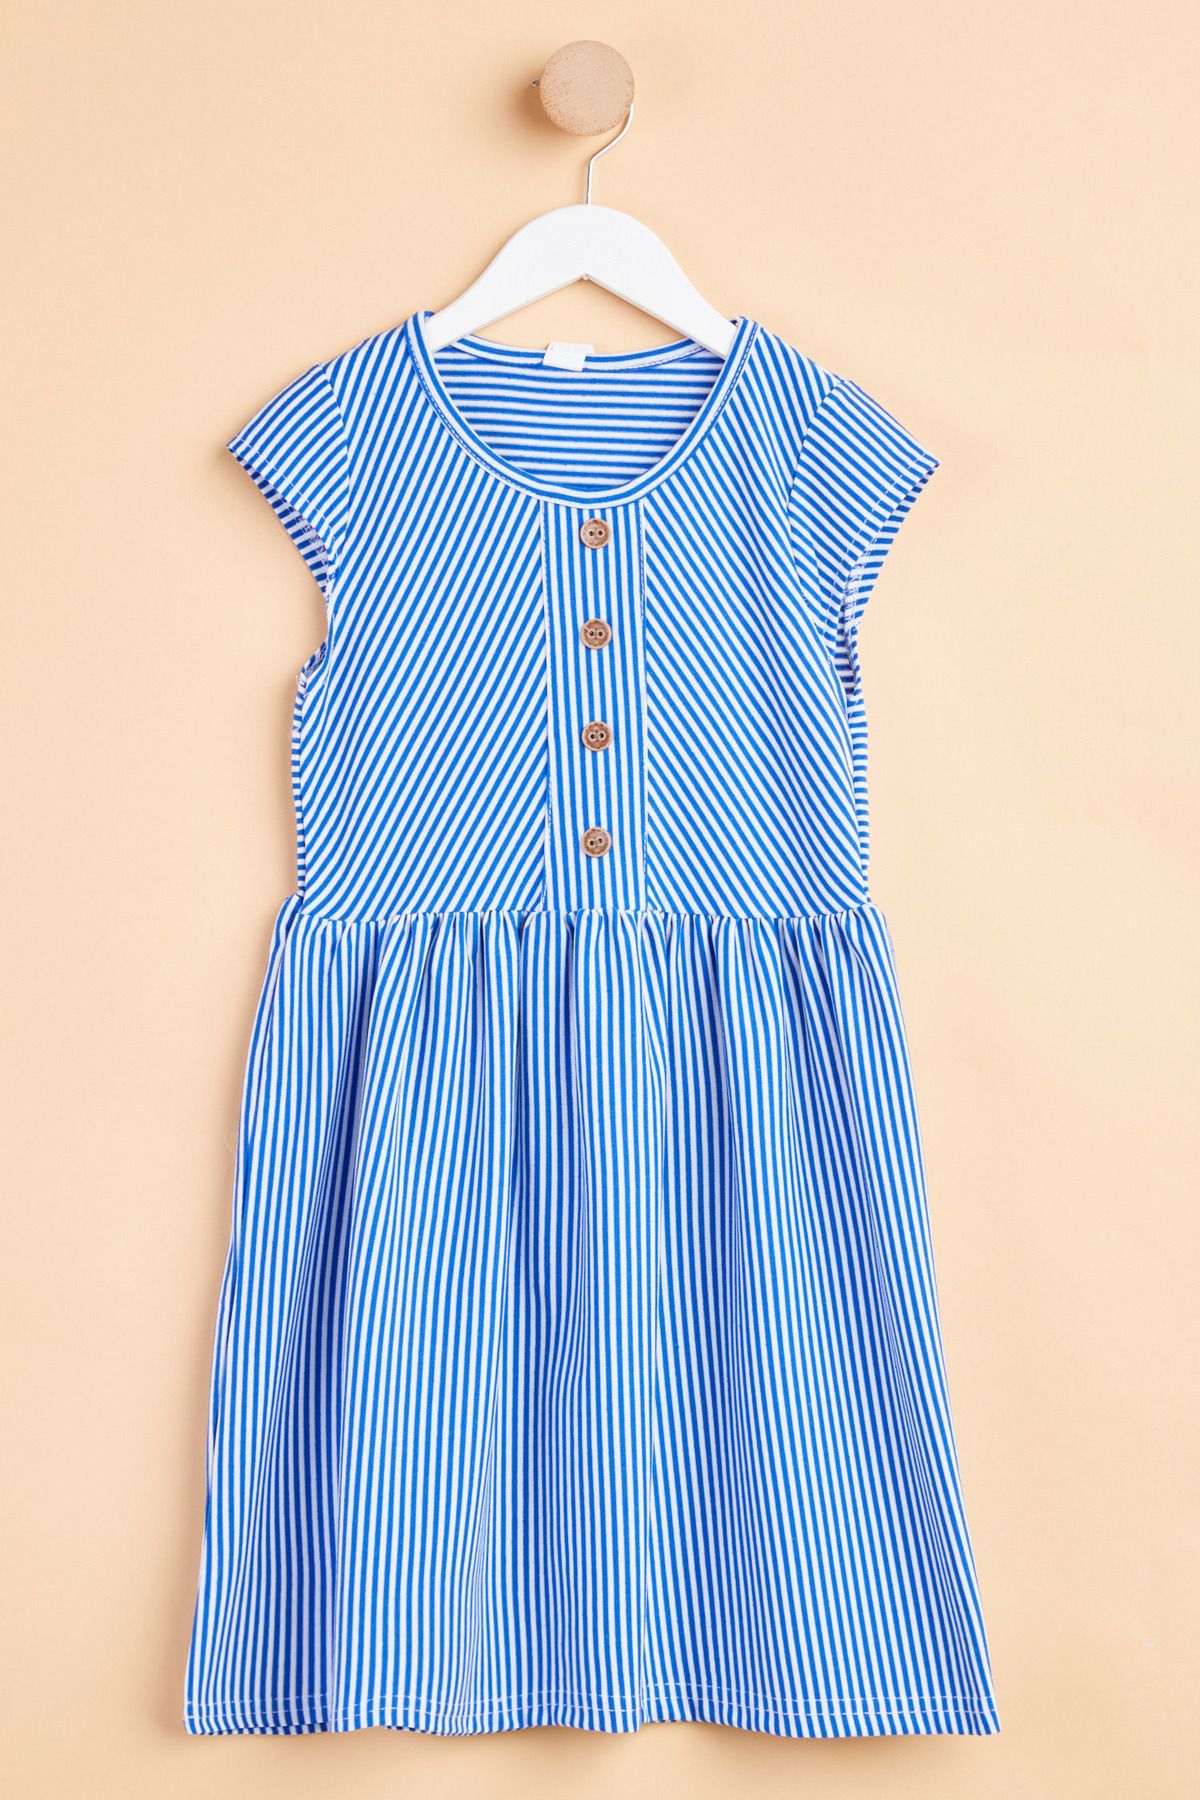 TOFİSA Kız Çocuk Mavi Çizgili Kısa Kollu Elbise - 24943